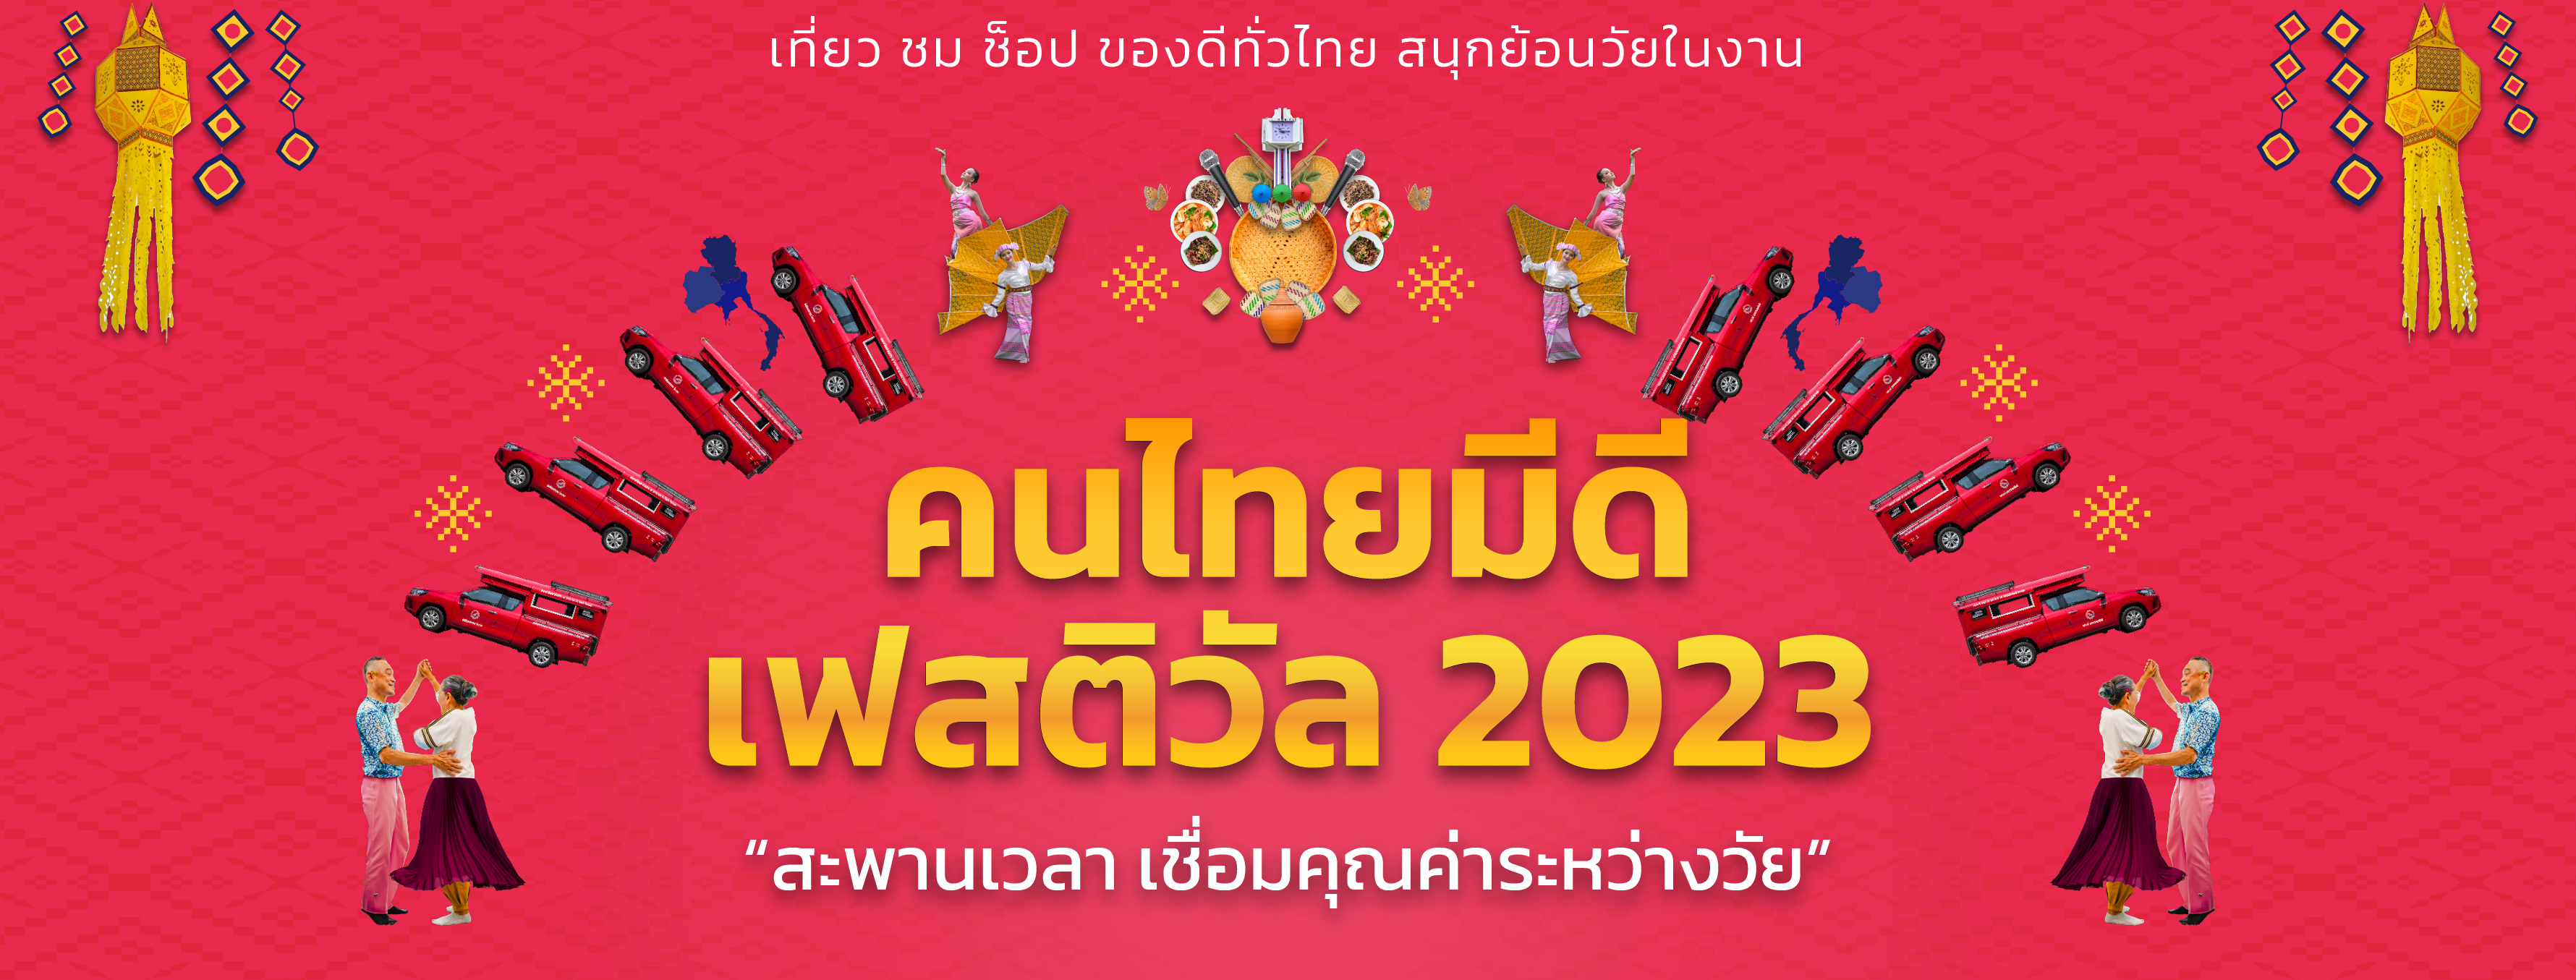 กิจกรรมคนไทยมีดี เฟสติวัล 2023 “สะพานเวลา เชื่อมคุณค่าระหว่างวัย”